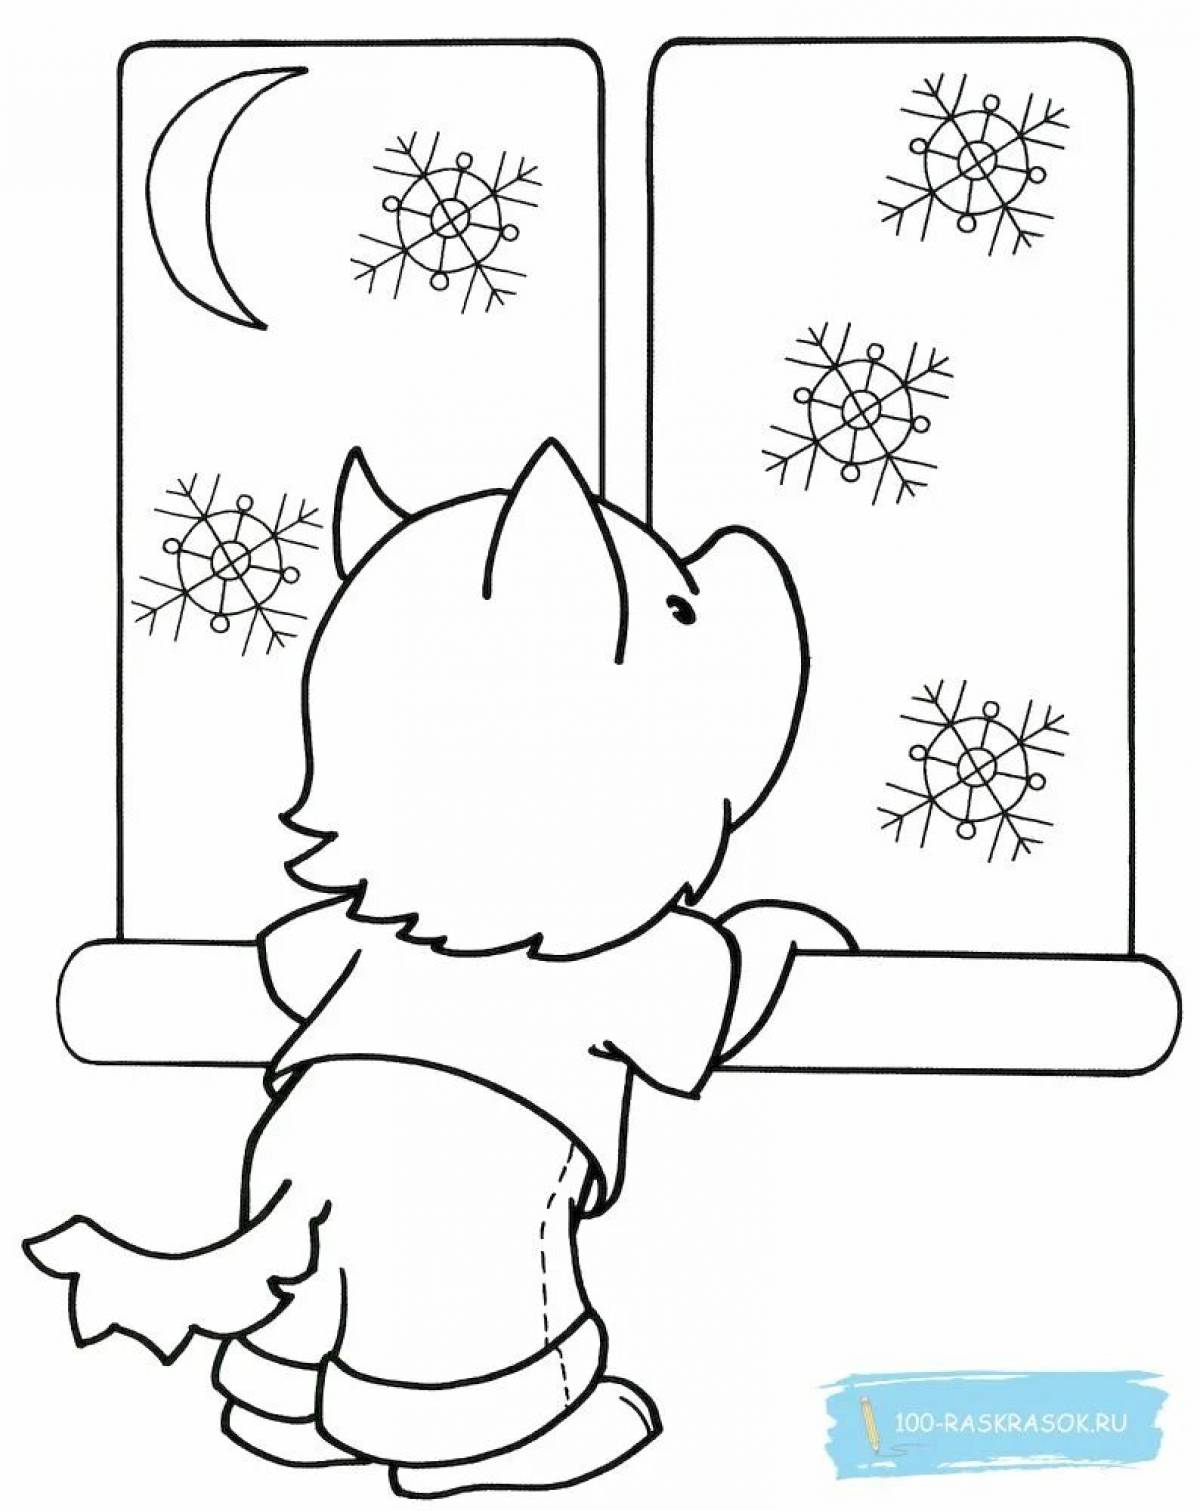 Гипнотическая раскраска узоры на окне мороз для детей